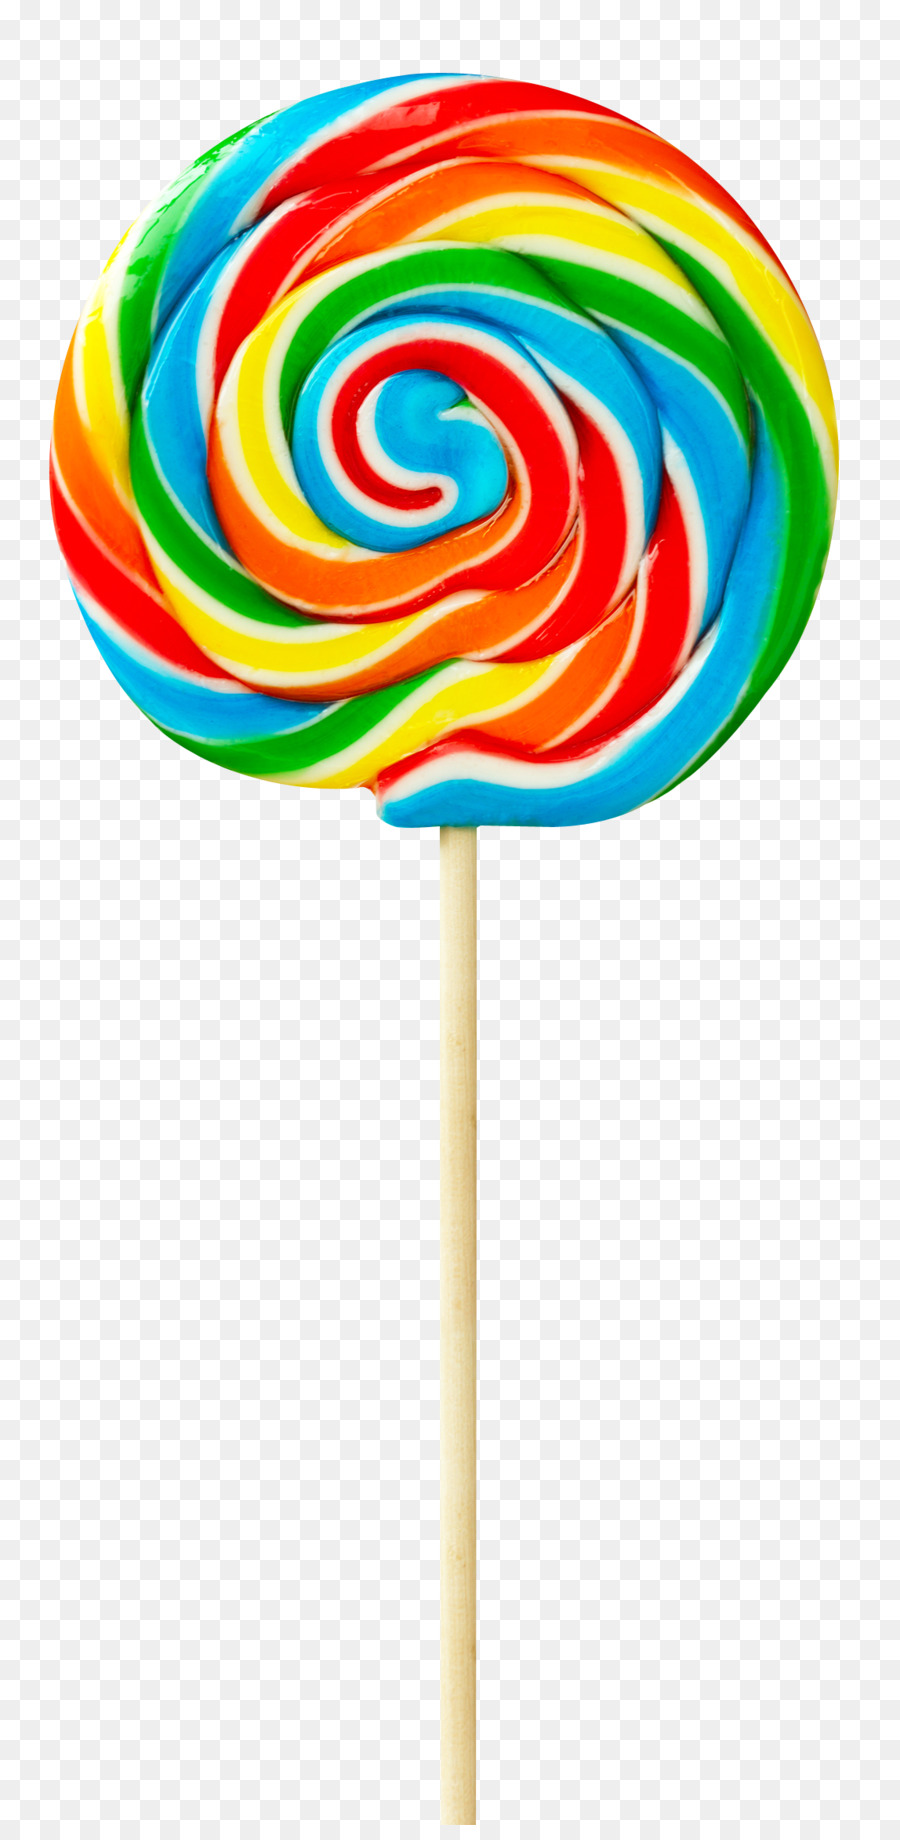 Lollipop Rock candy - Colorful Lollipop png download - 1148*2328 - Free Transparent Lollipop png Download.